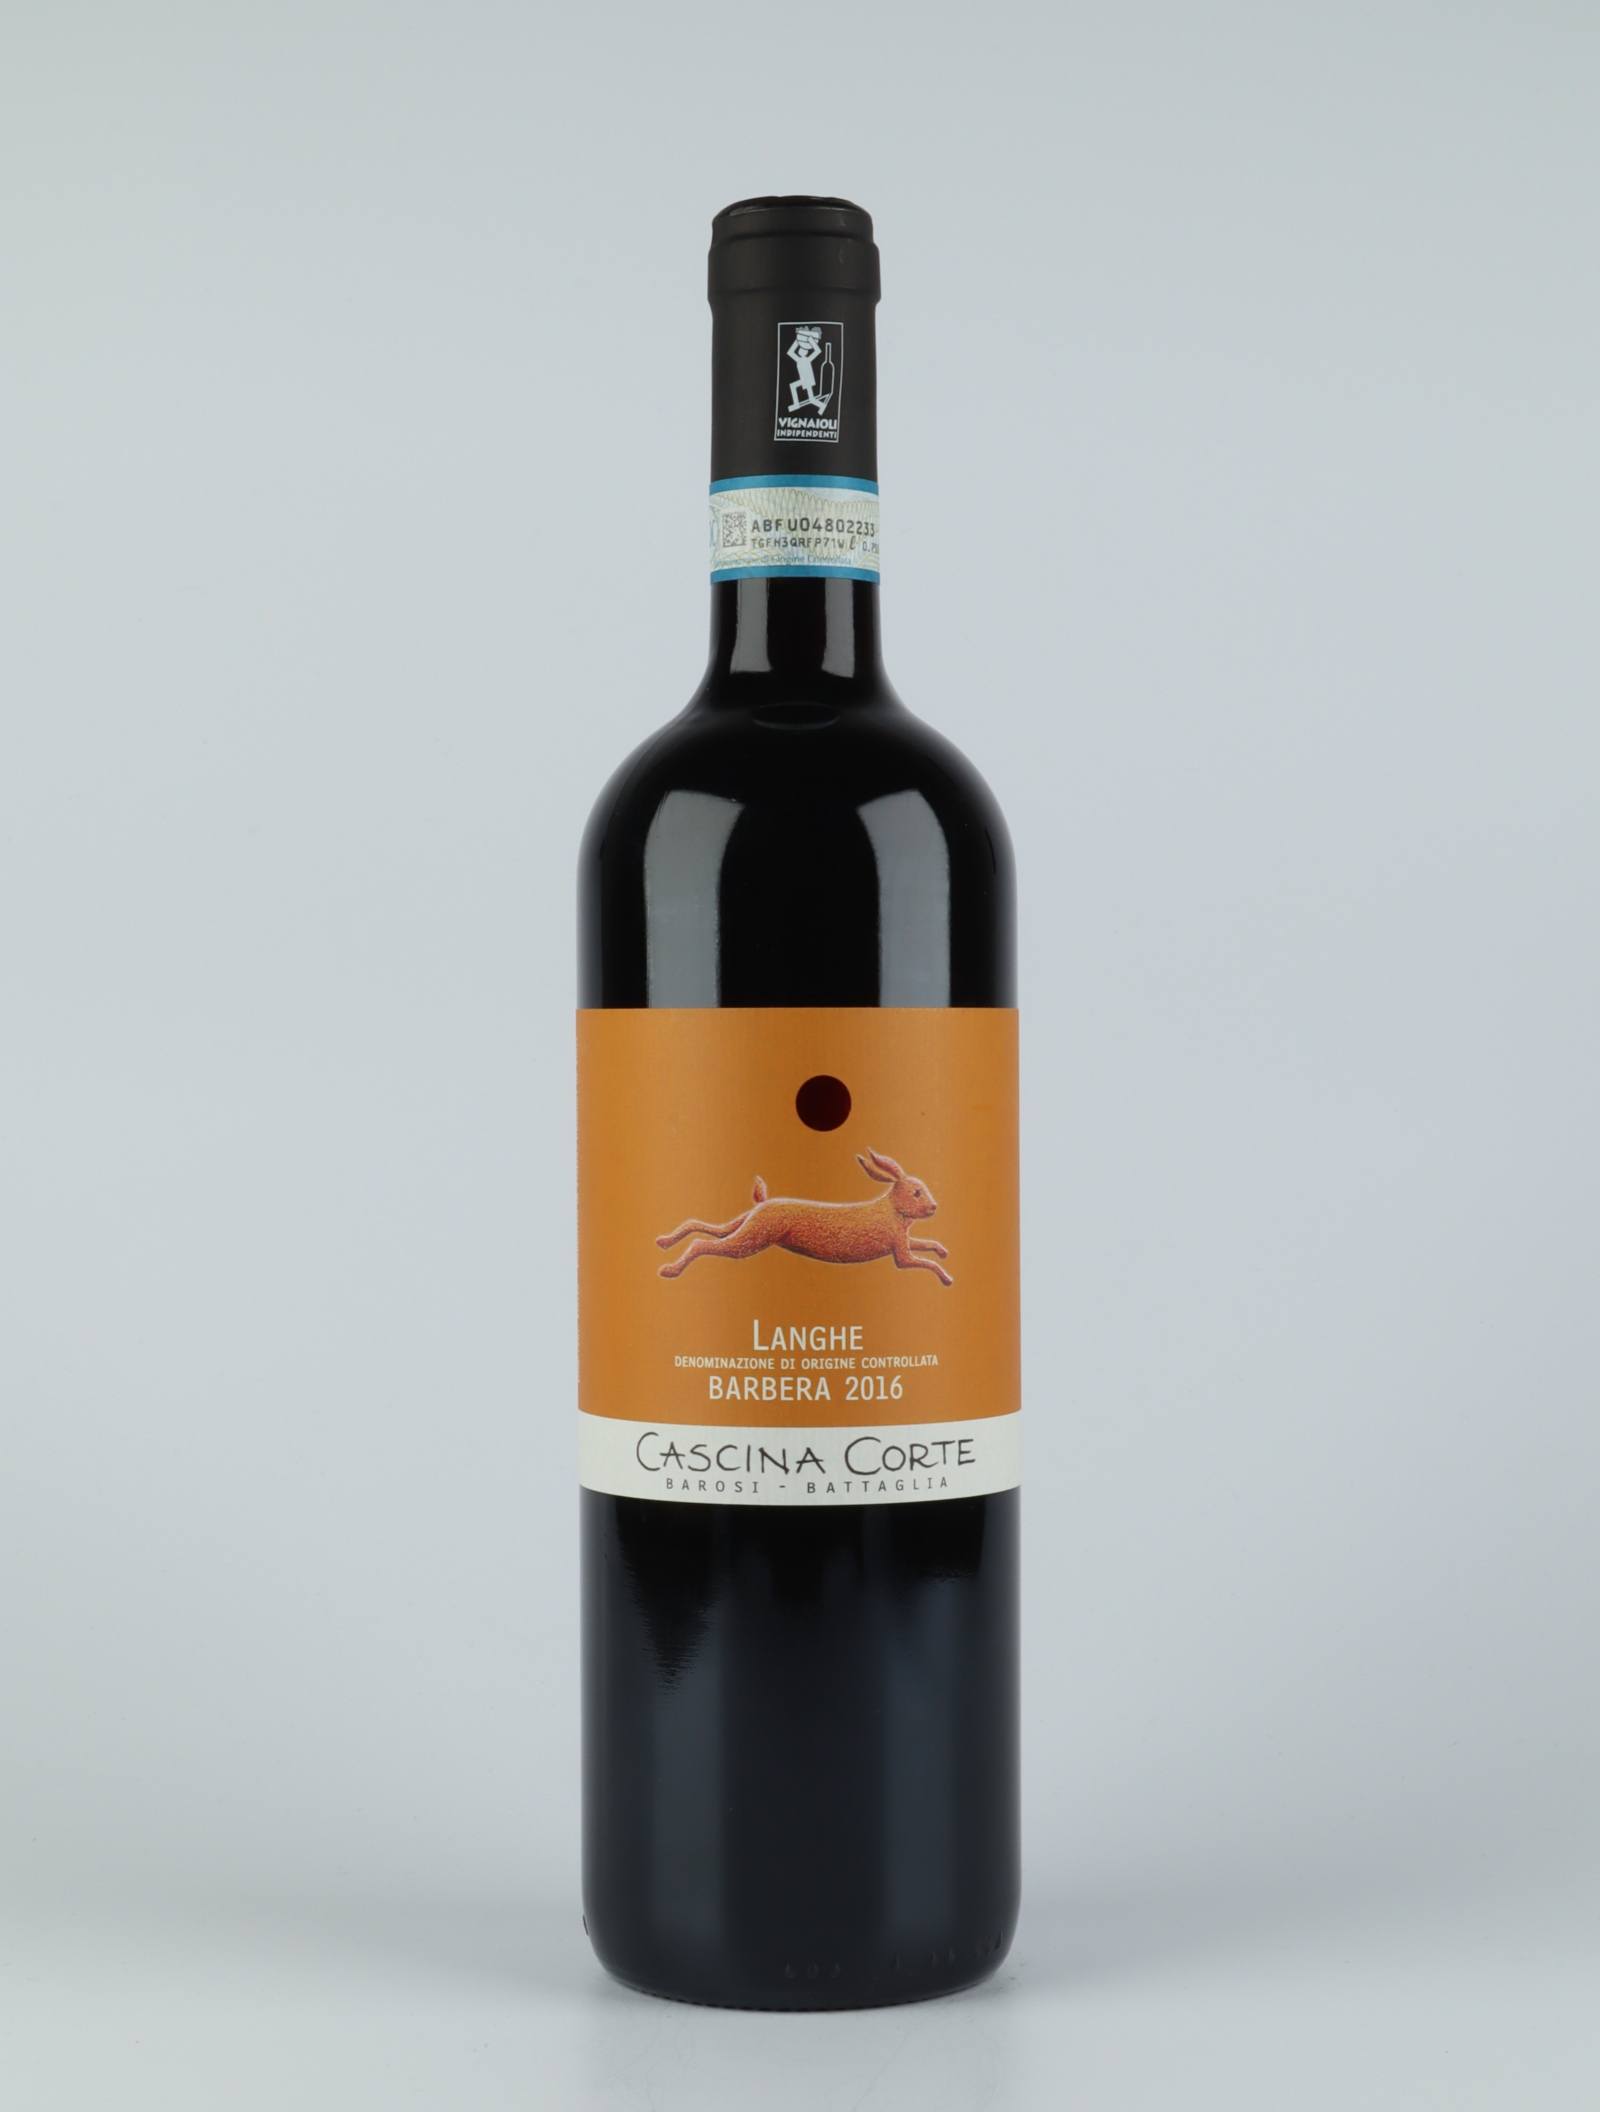 En flaske 2016 Barbera Rødvin fra Cascina Corte, Piemonte i Italien